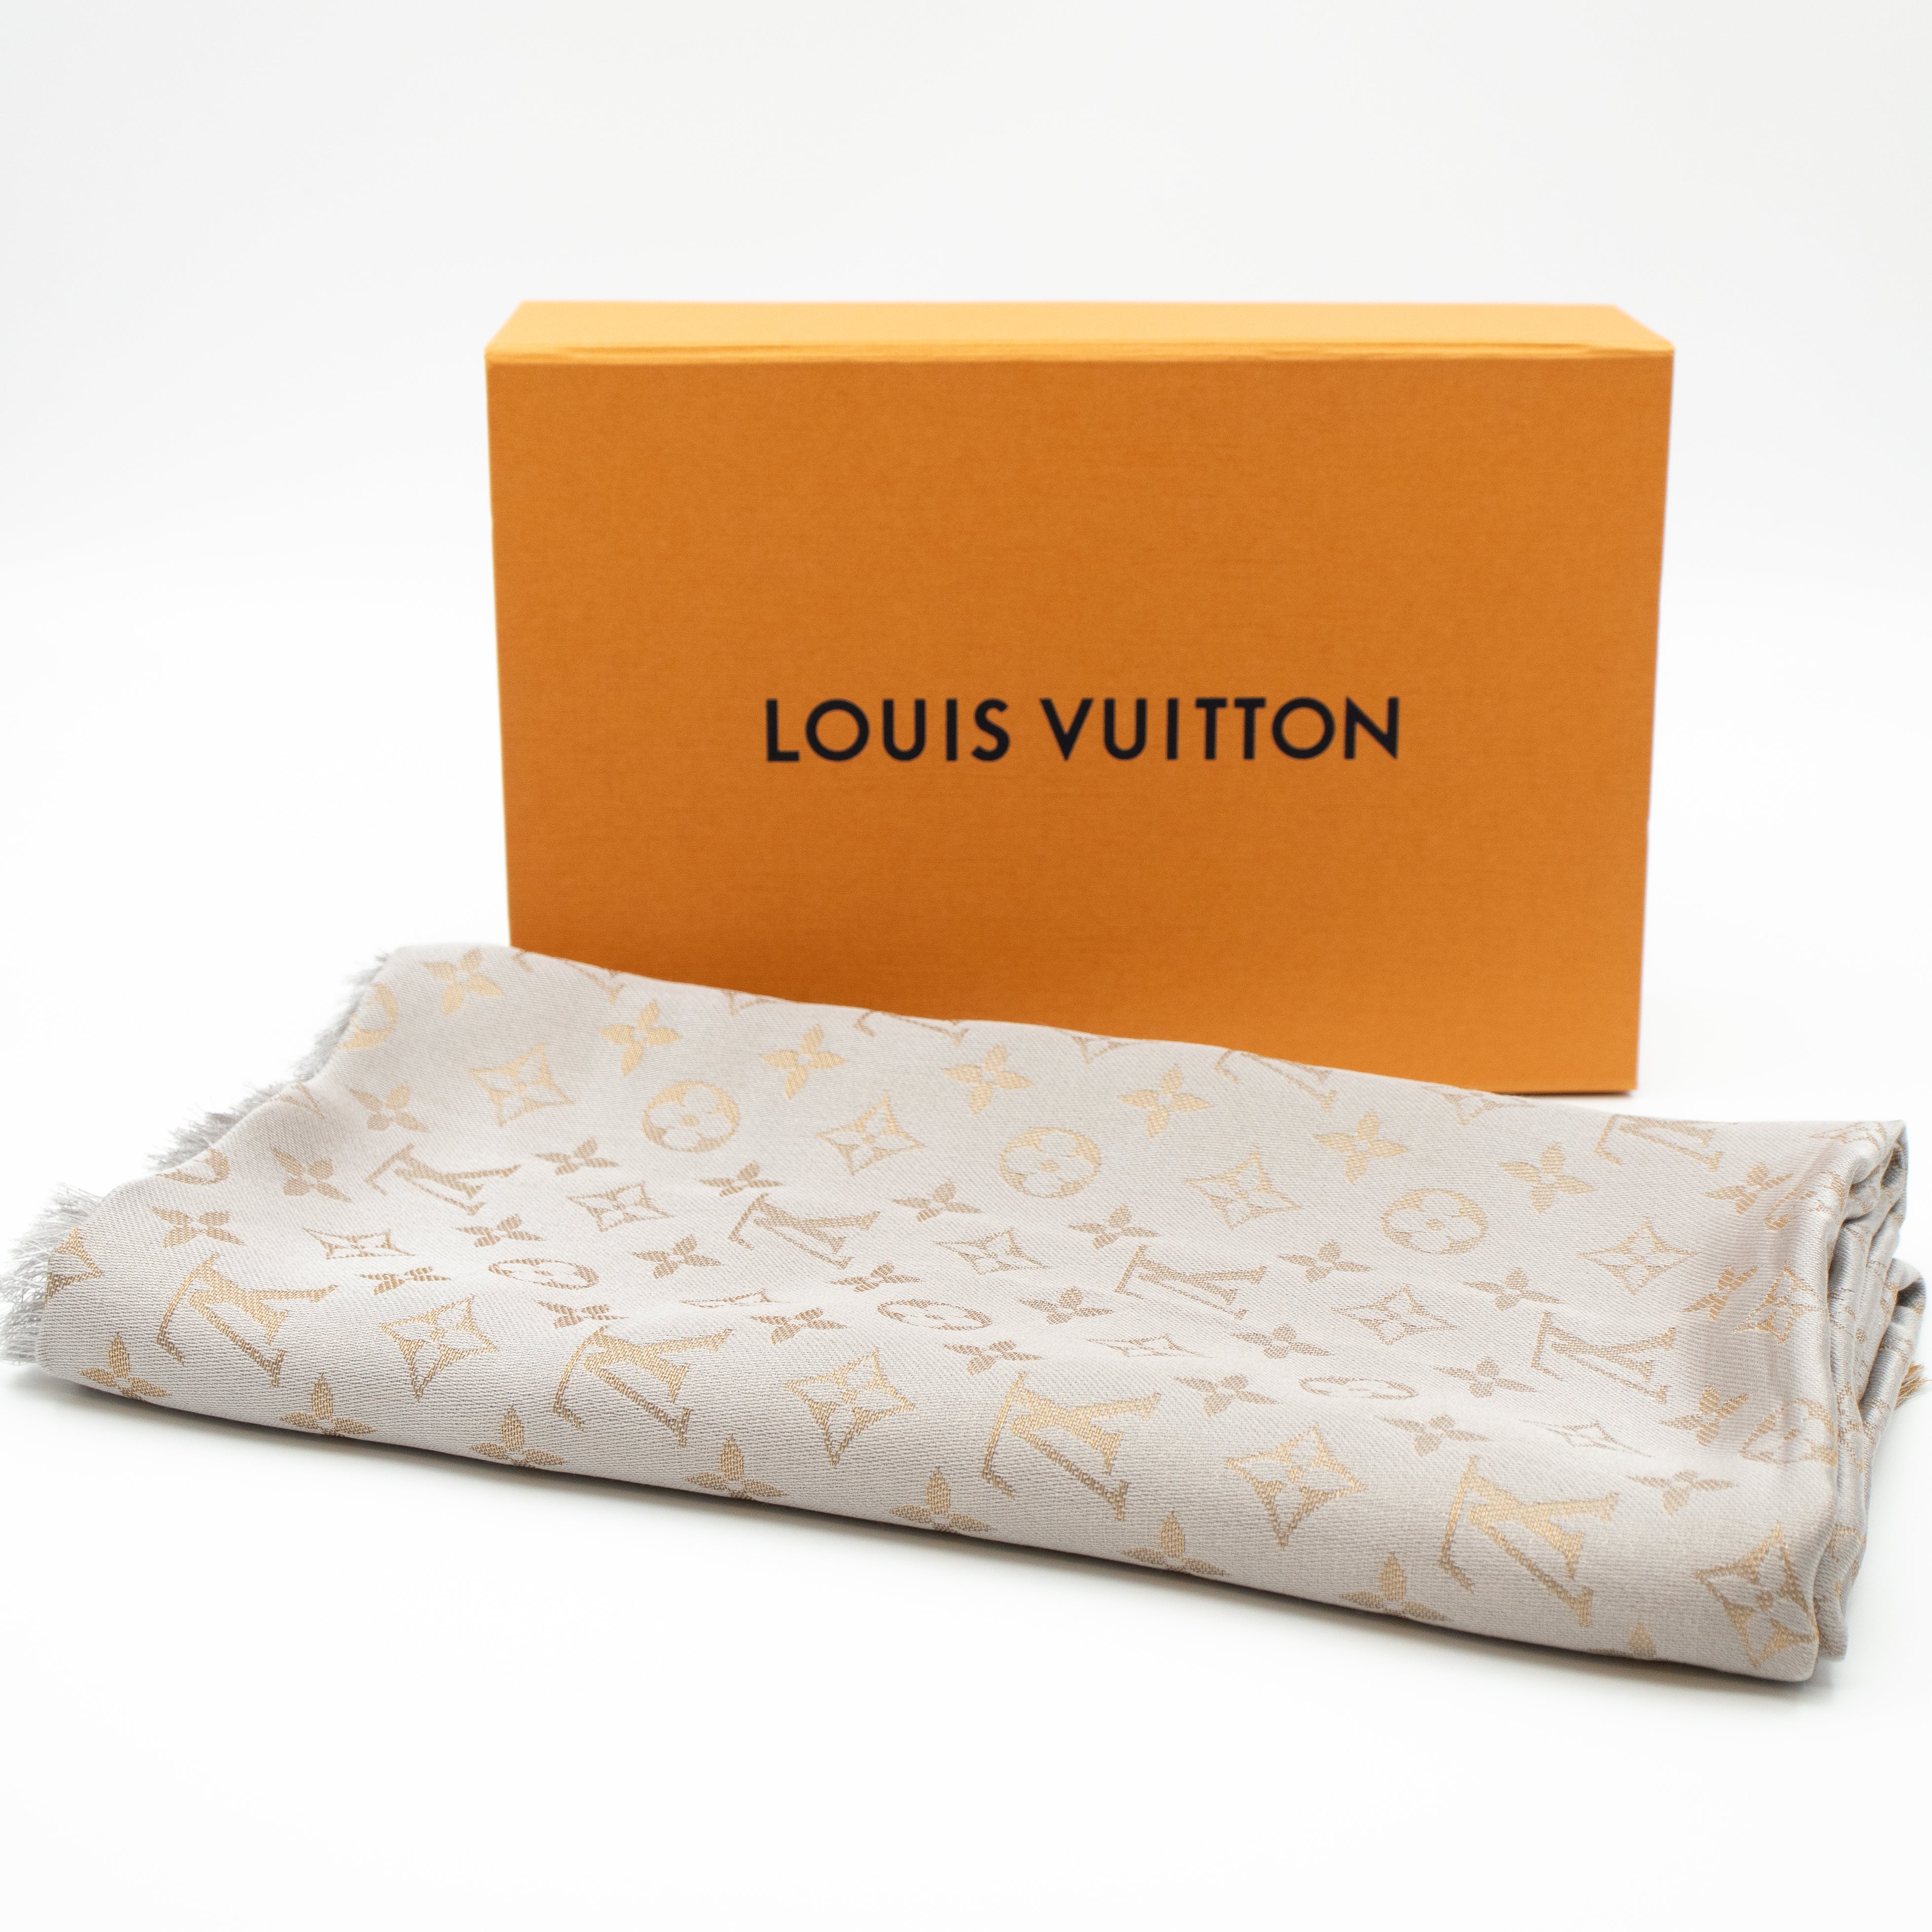 Louis Vuitton Monogram Shawl, Shine Greige, M75121 - No Box - MA001